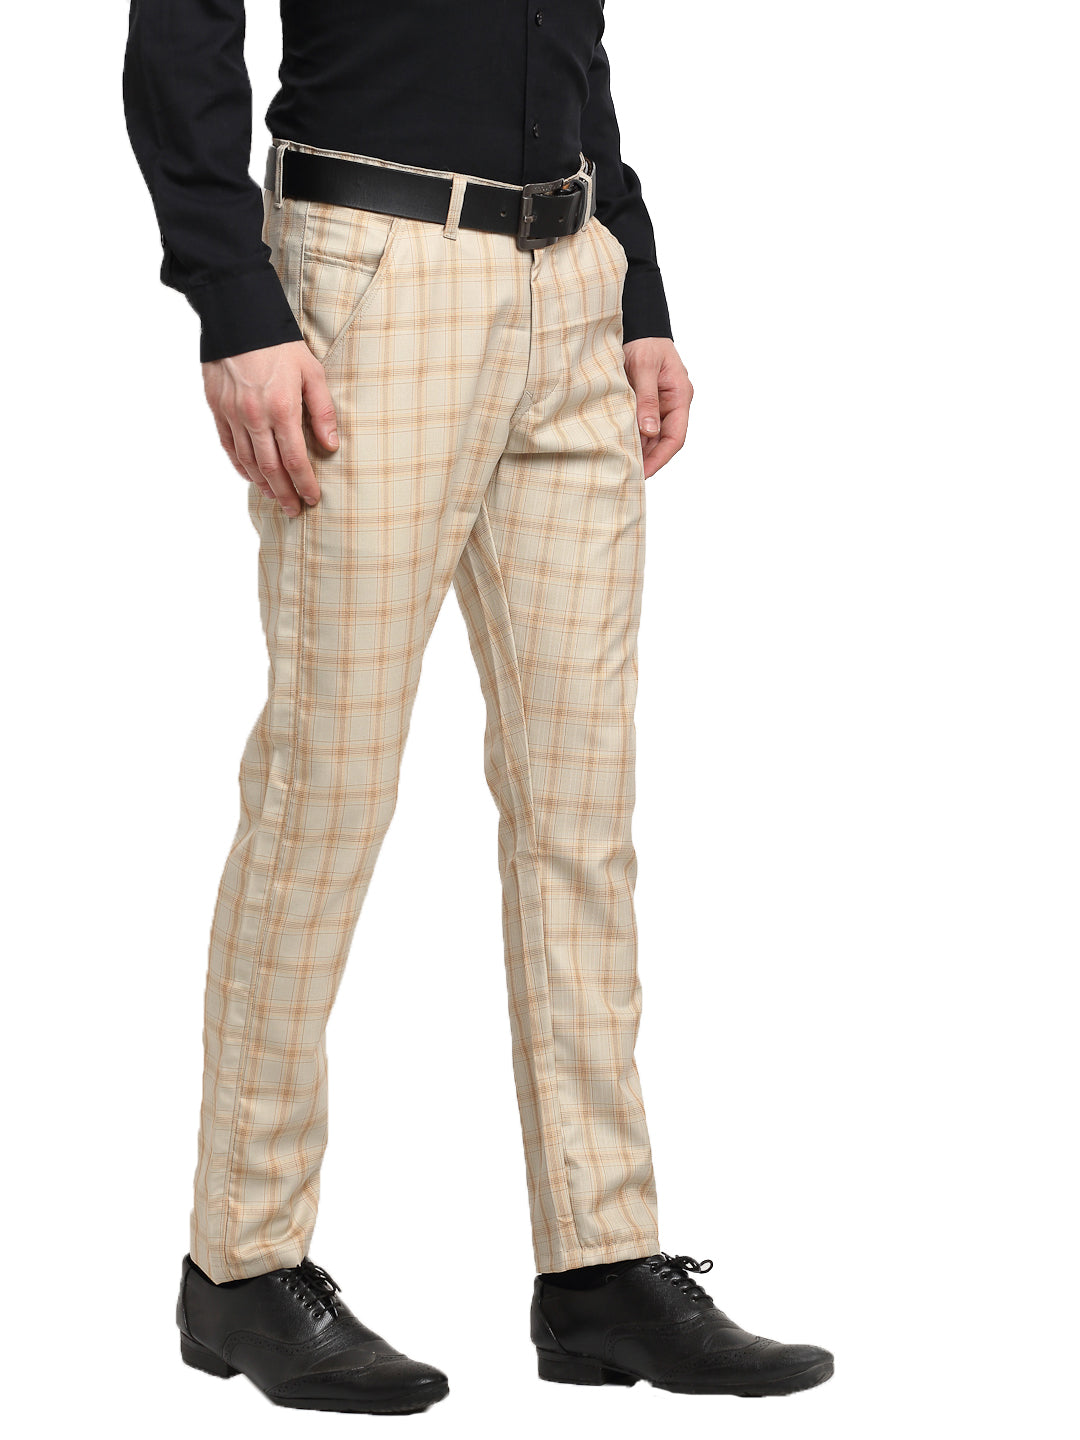 fcityin  Stylish Slim Fit Formal Trouser For Men Cream  Ravishing Trendy  Men